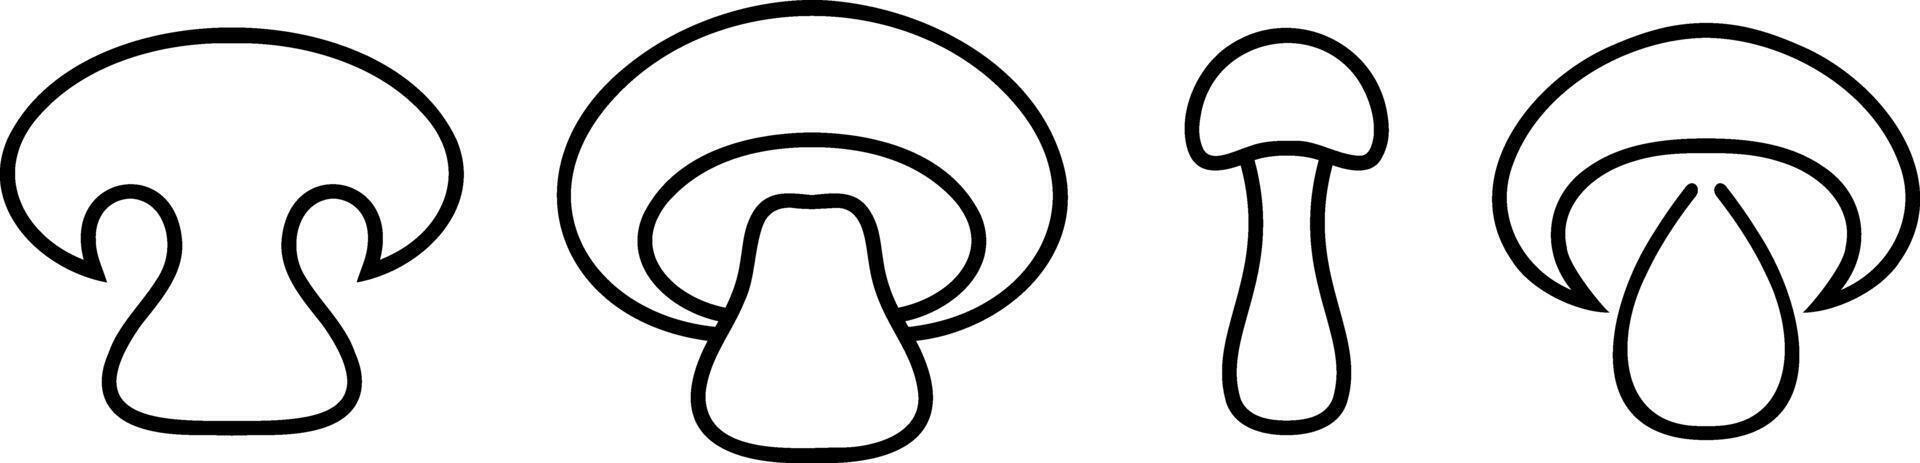 griffonnage champignon icône légume en bonne santé nourriture pochoir vecteur illustration